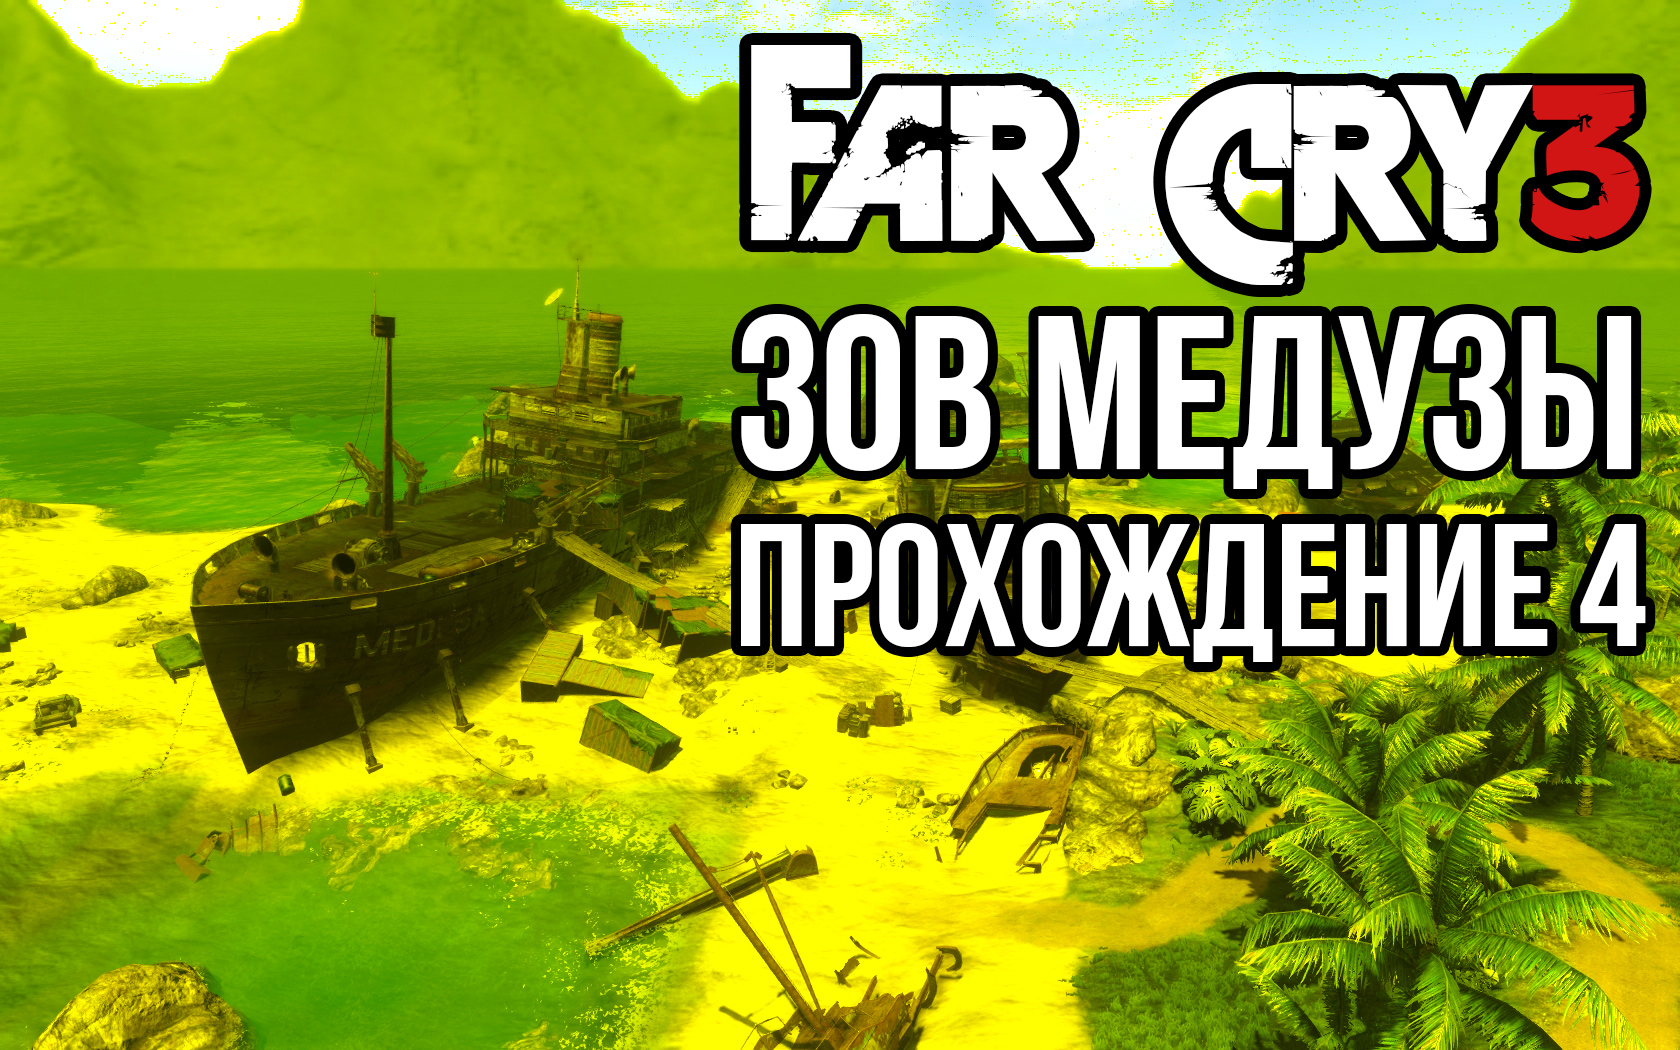 Far Cry 3. Зов медузы. Прохождение #4